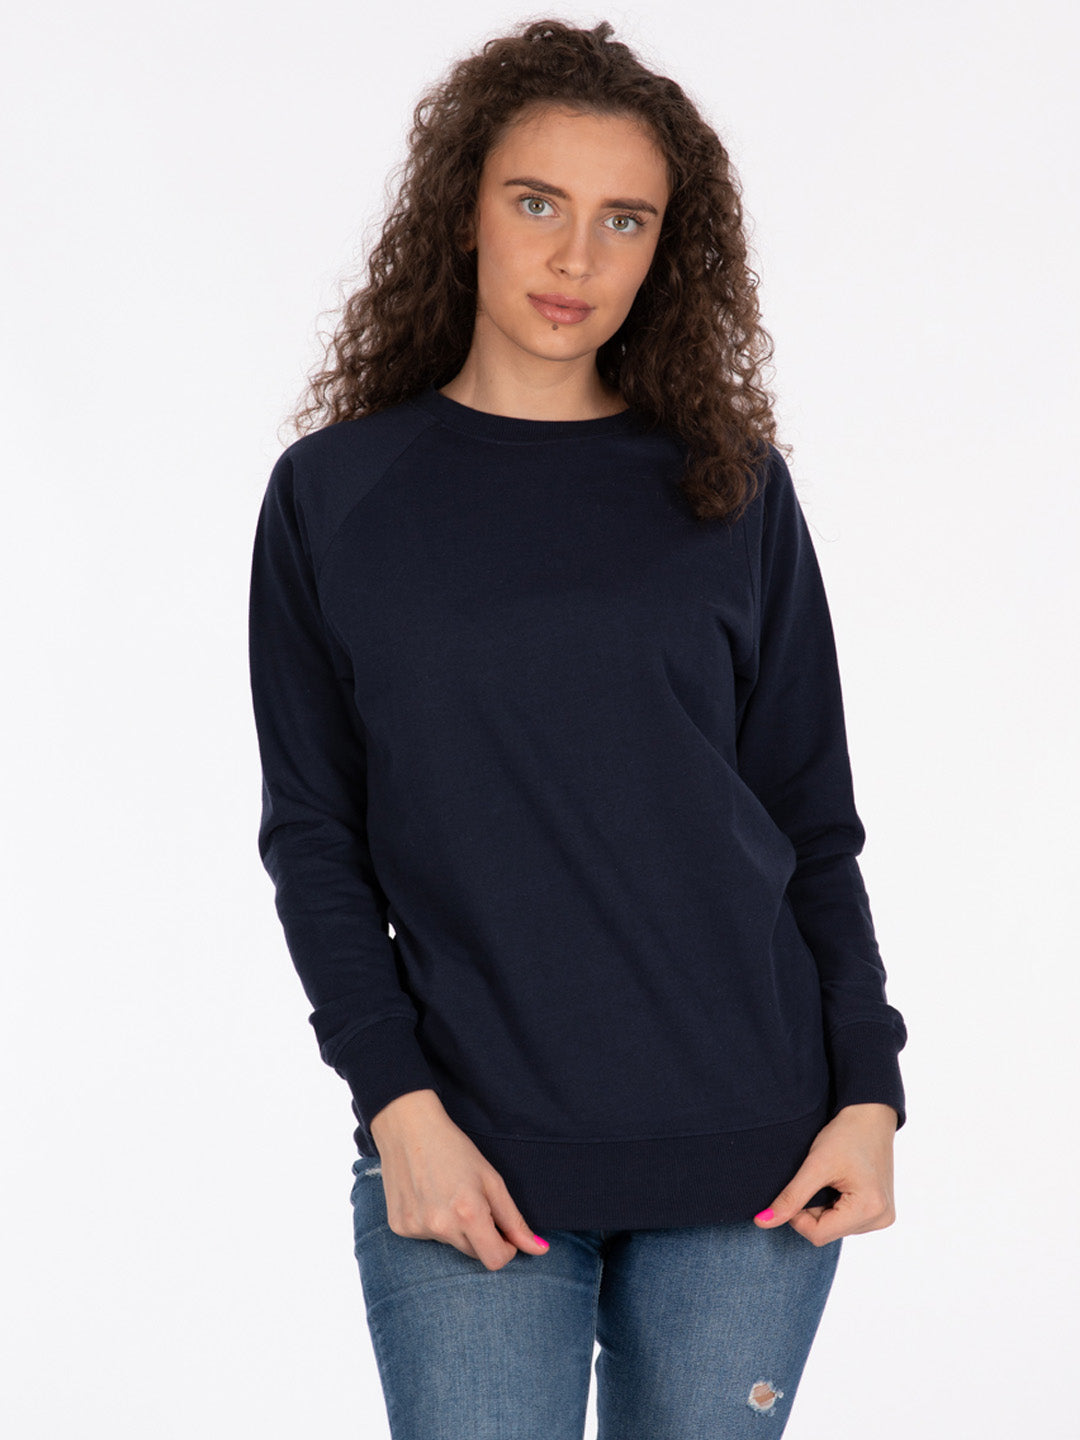 files/Women-Sweatshirt-marine-1511-Manoa.jpg